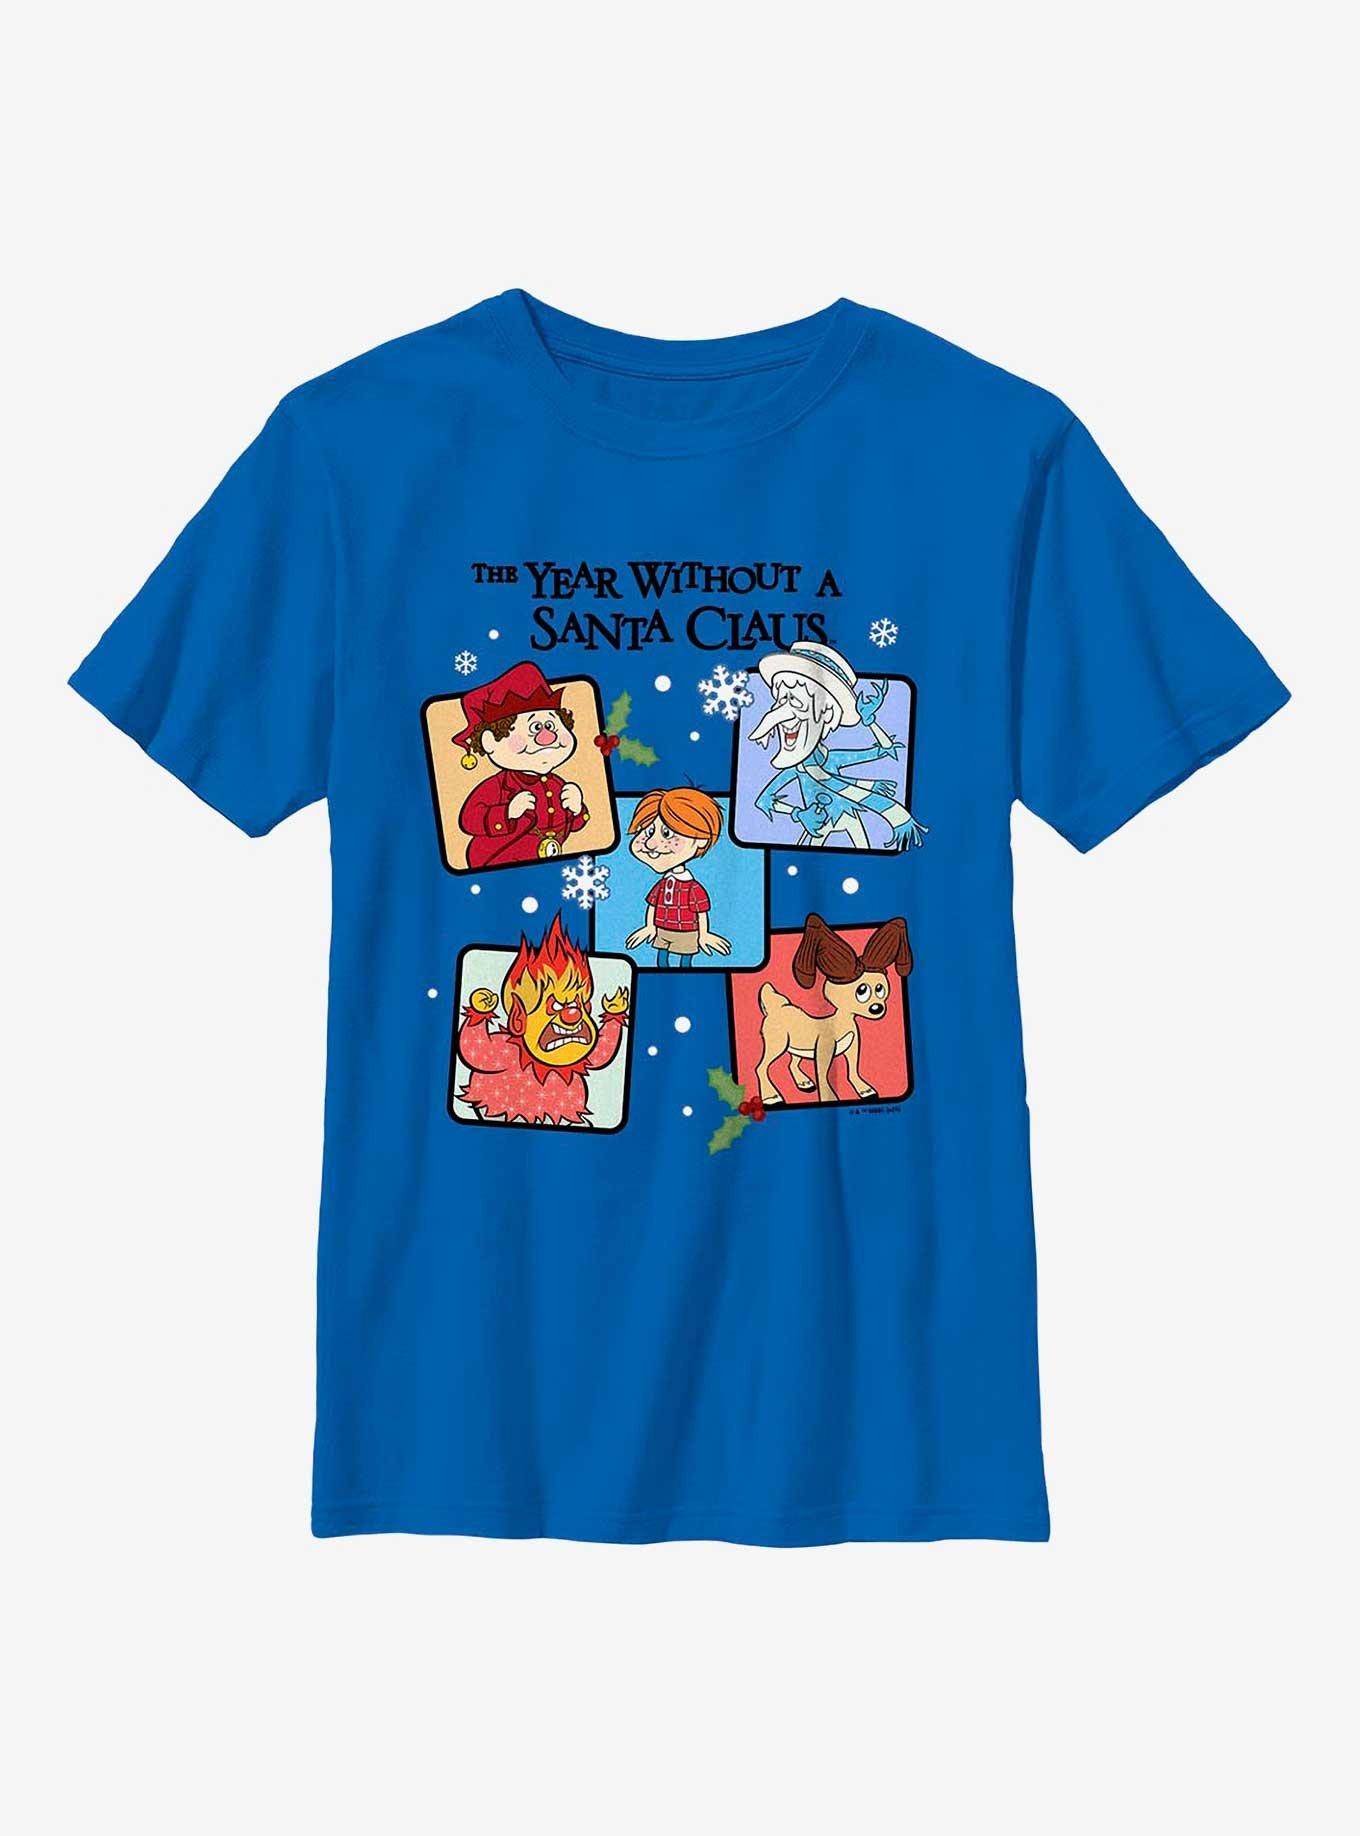 The Year Without Santa Claus Box Up Youth T-Shirt, ROYAL, hi-res